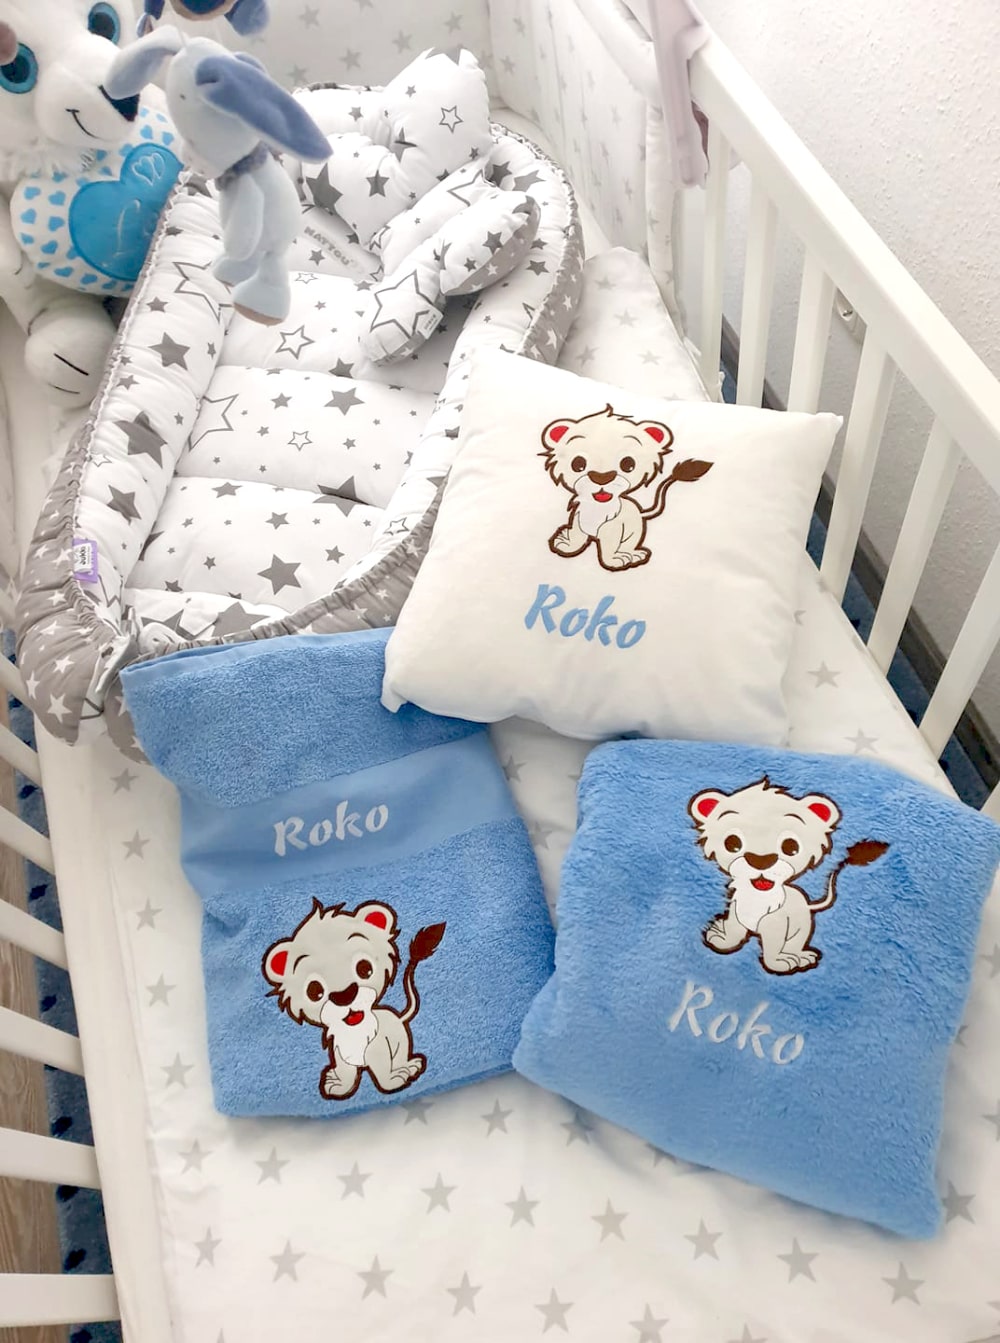 Een gepersonaliseerde set voor kinderen - een kussen, deken en handdoek met de naam van de baby